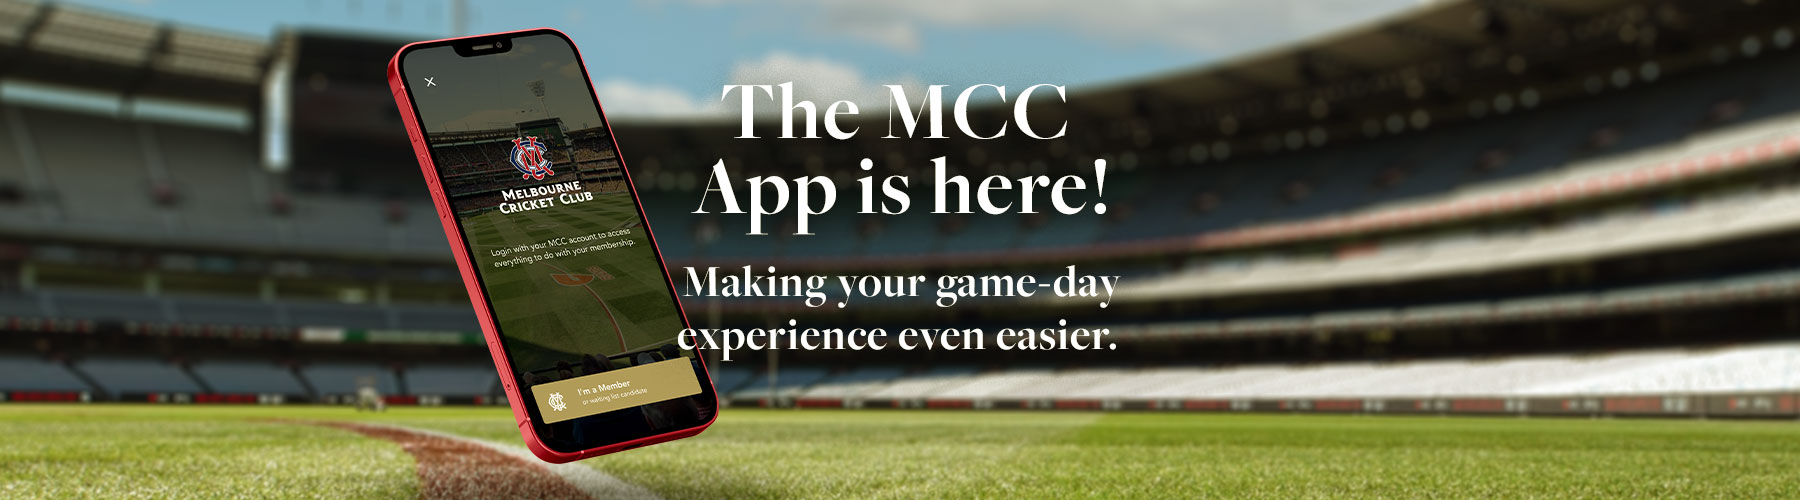 MCC App